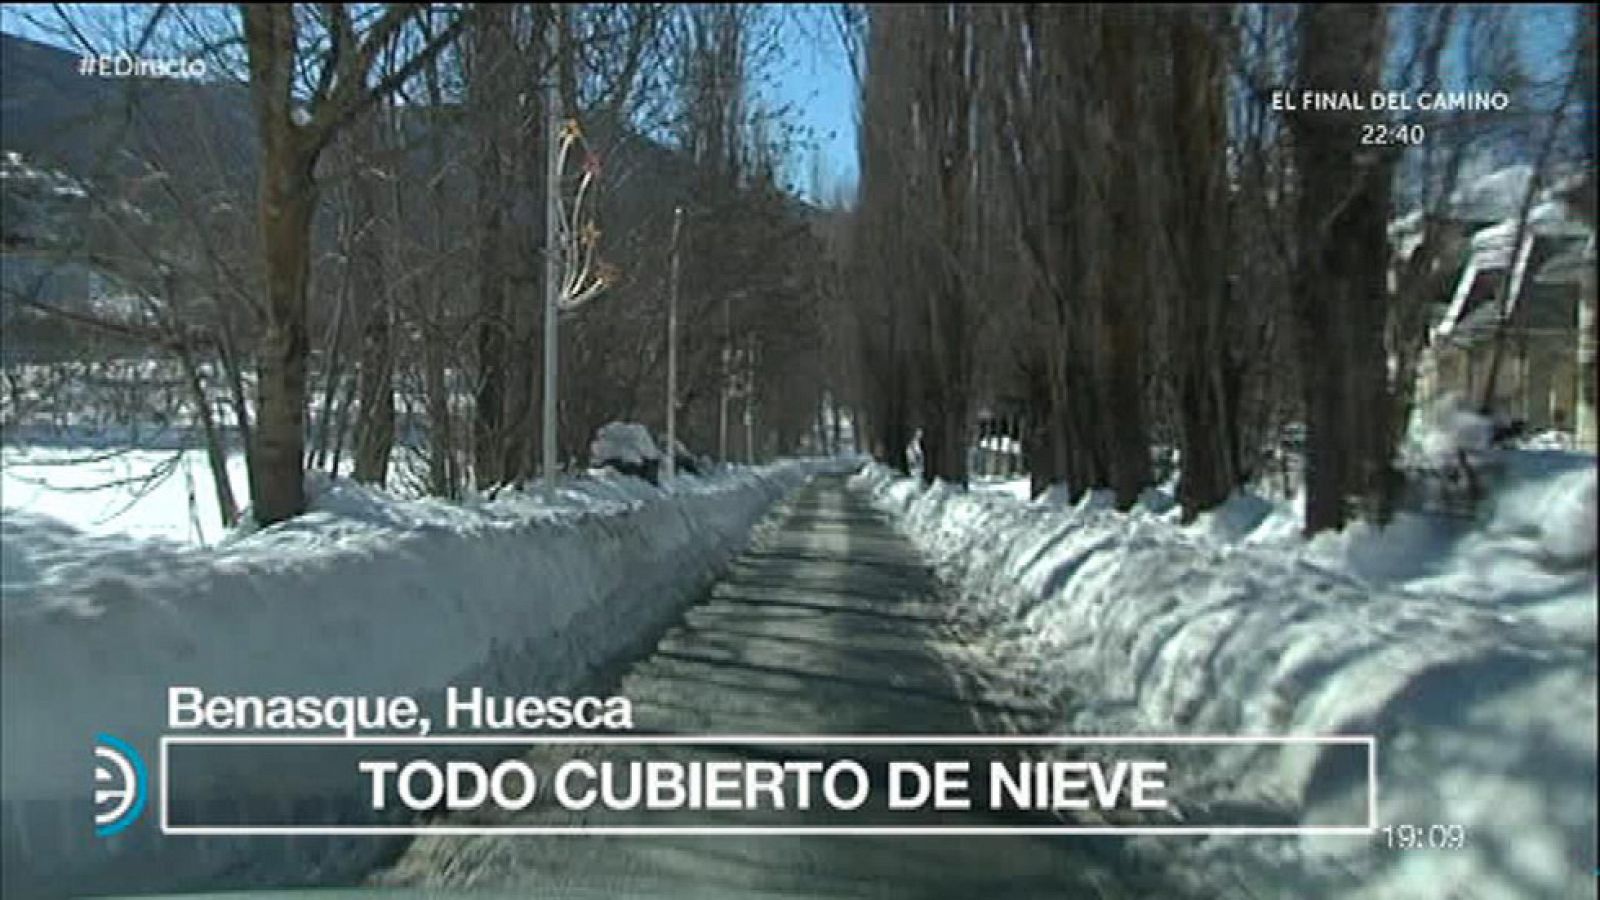 España Directo - Nevada histórica, heladas y el termómetro a 17 bajo cero en Benasque